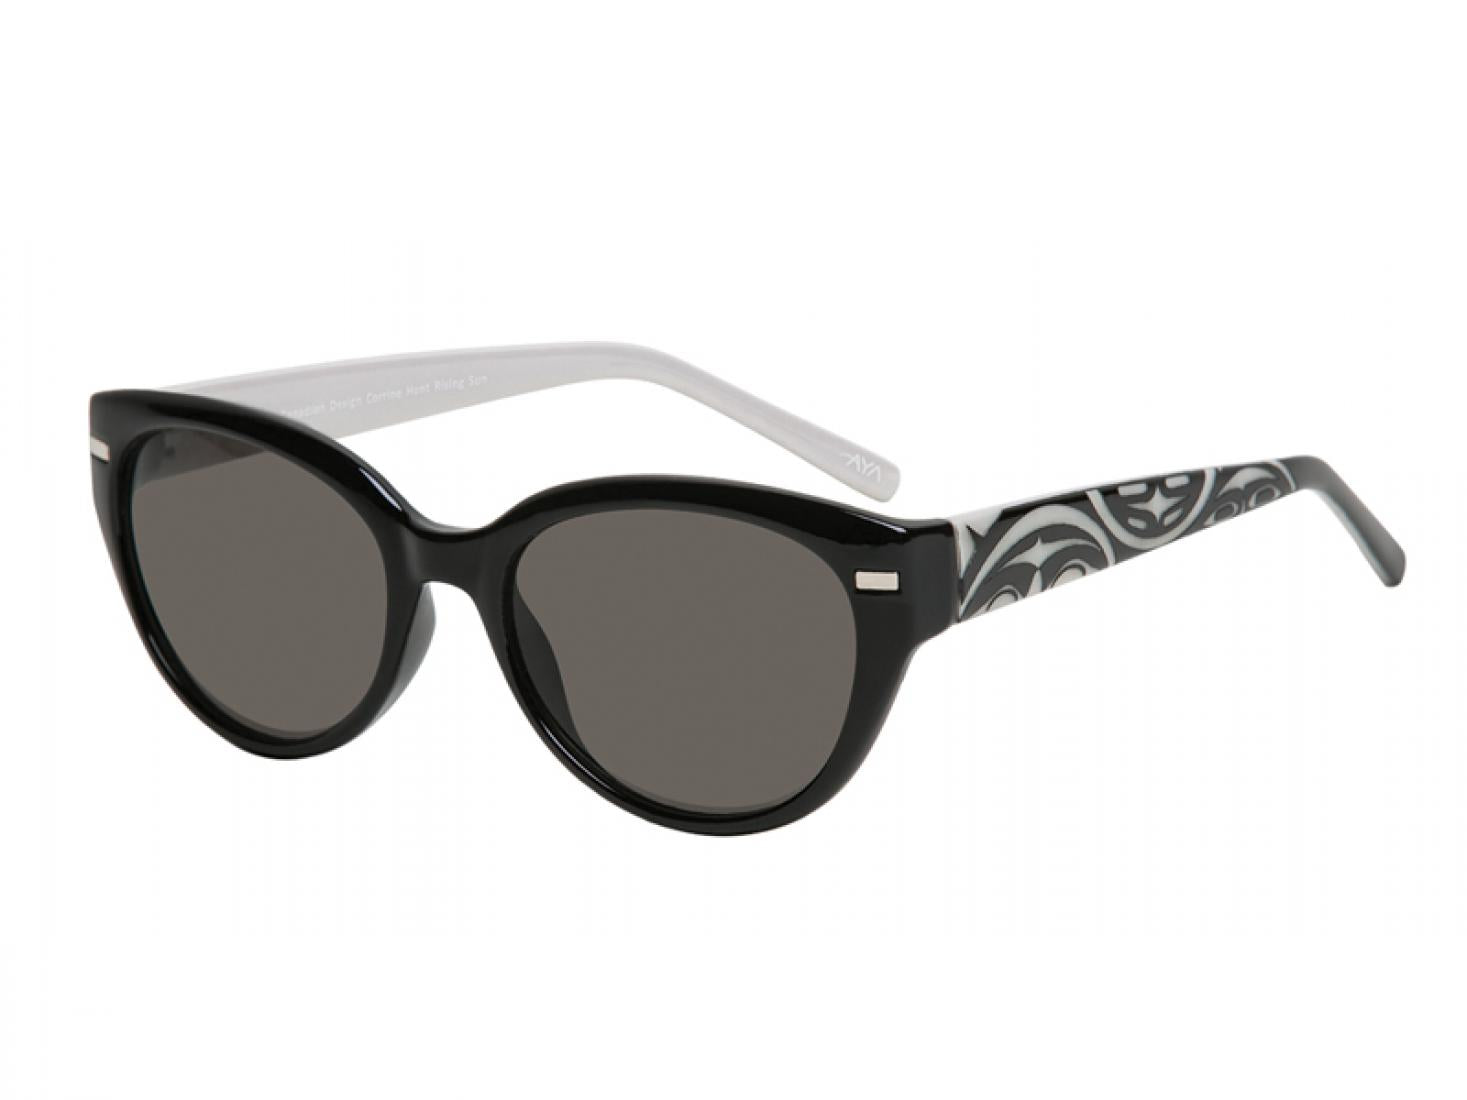 Soleil Sunglasses with Rising Sun Design